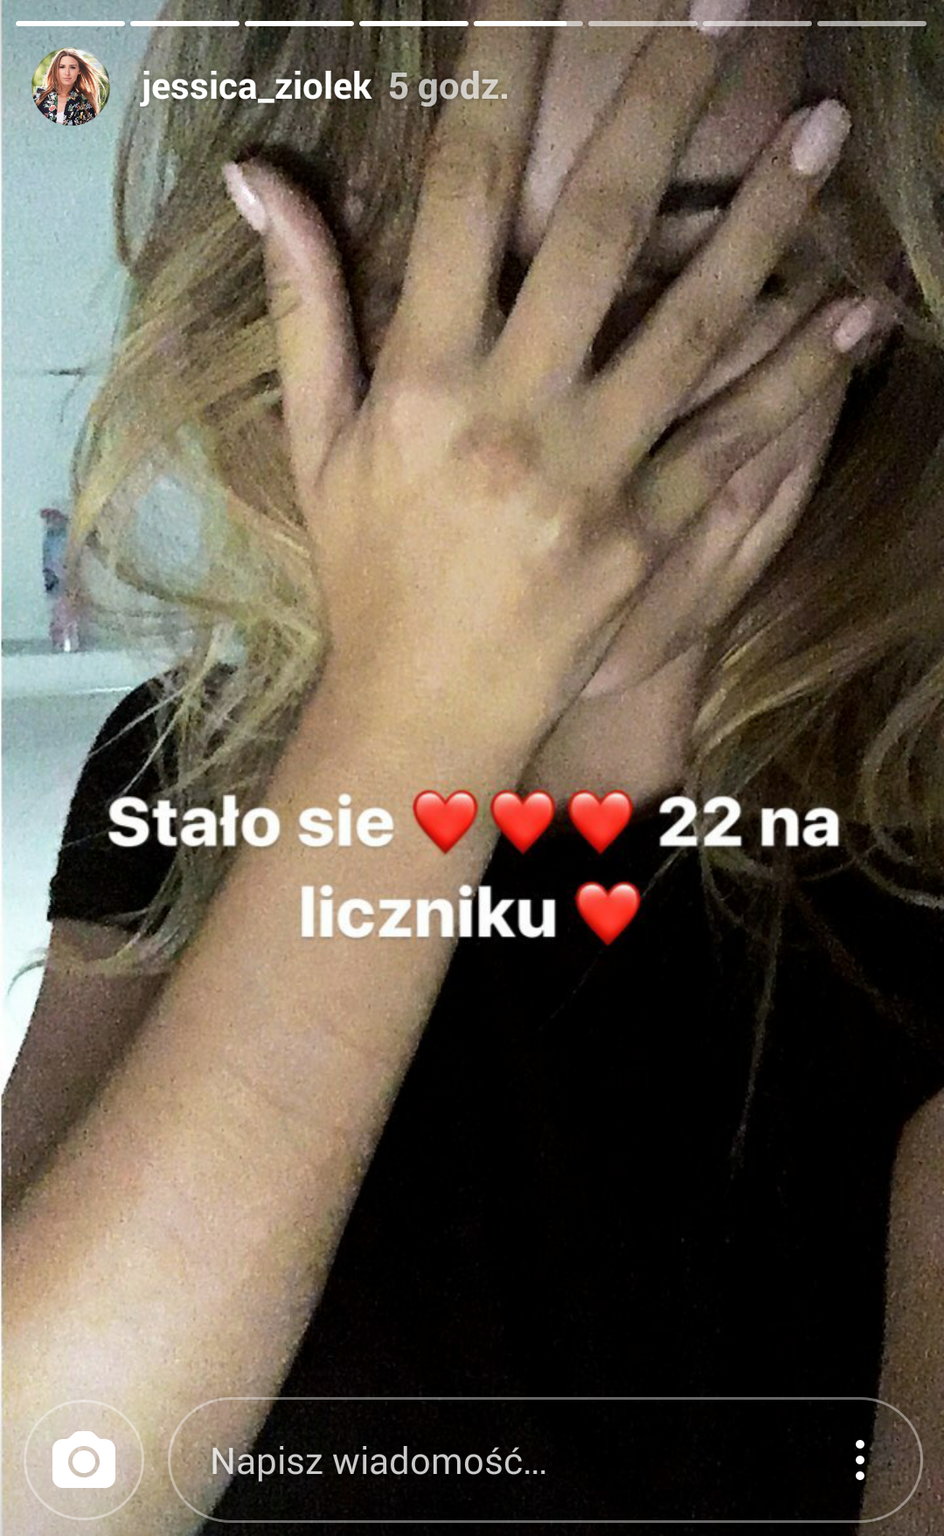 Jessica Ziółek